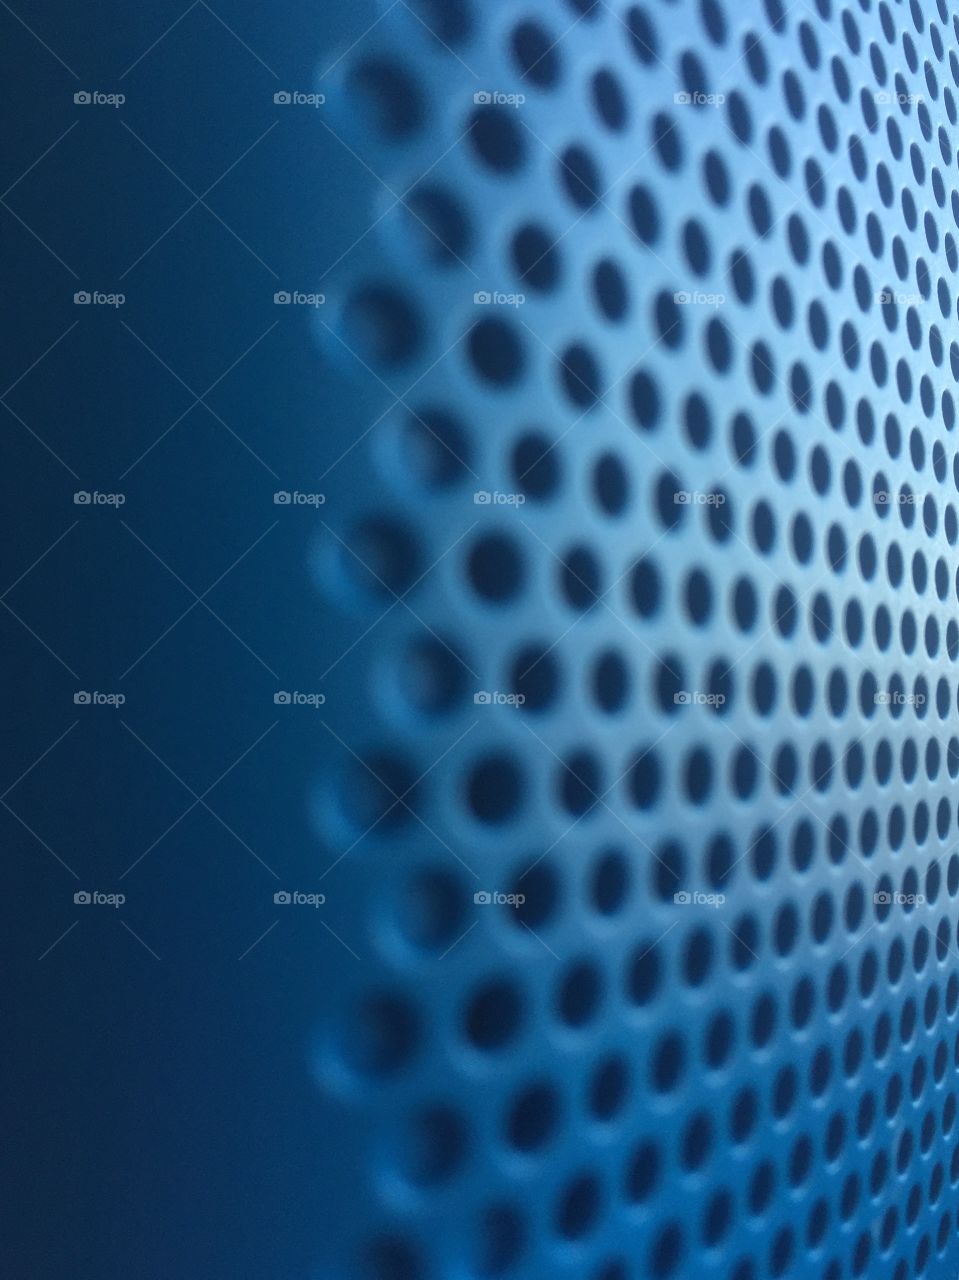 Blue metallic round mesh background